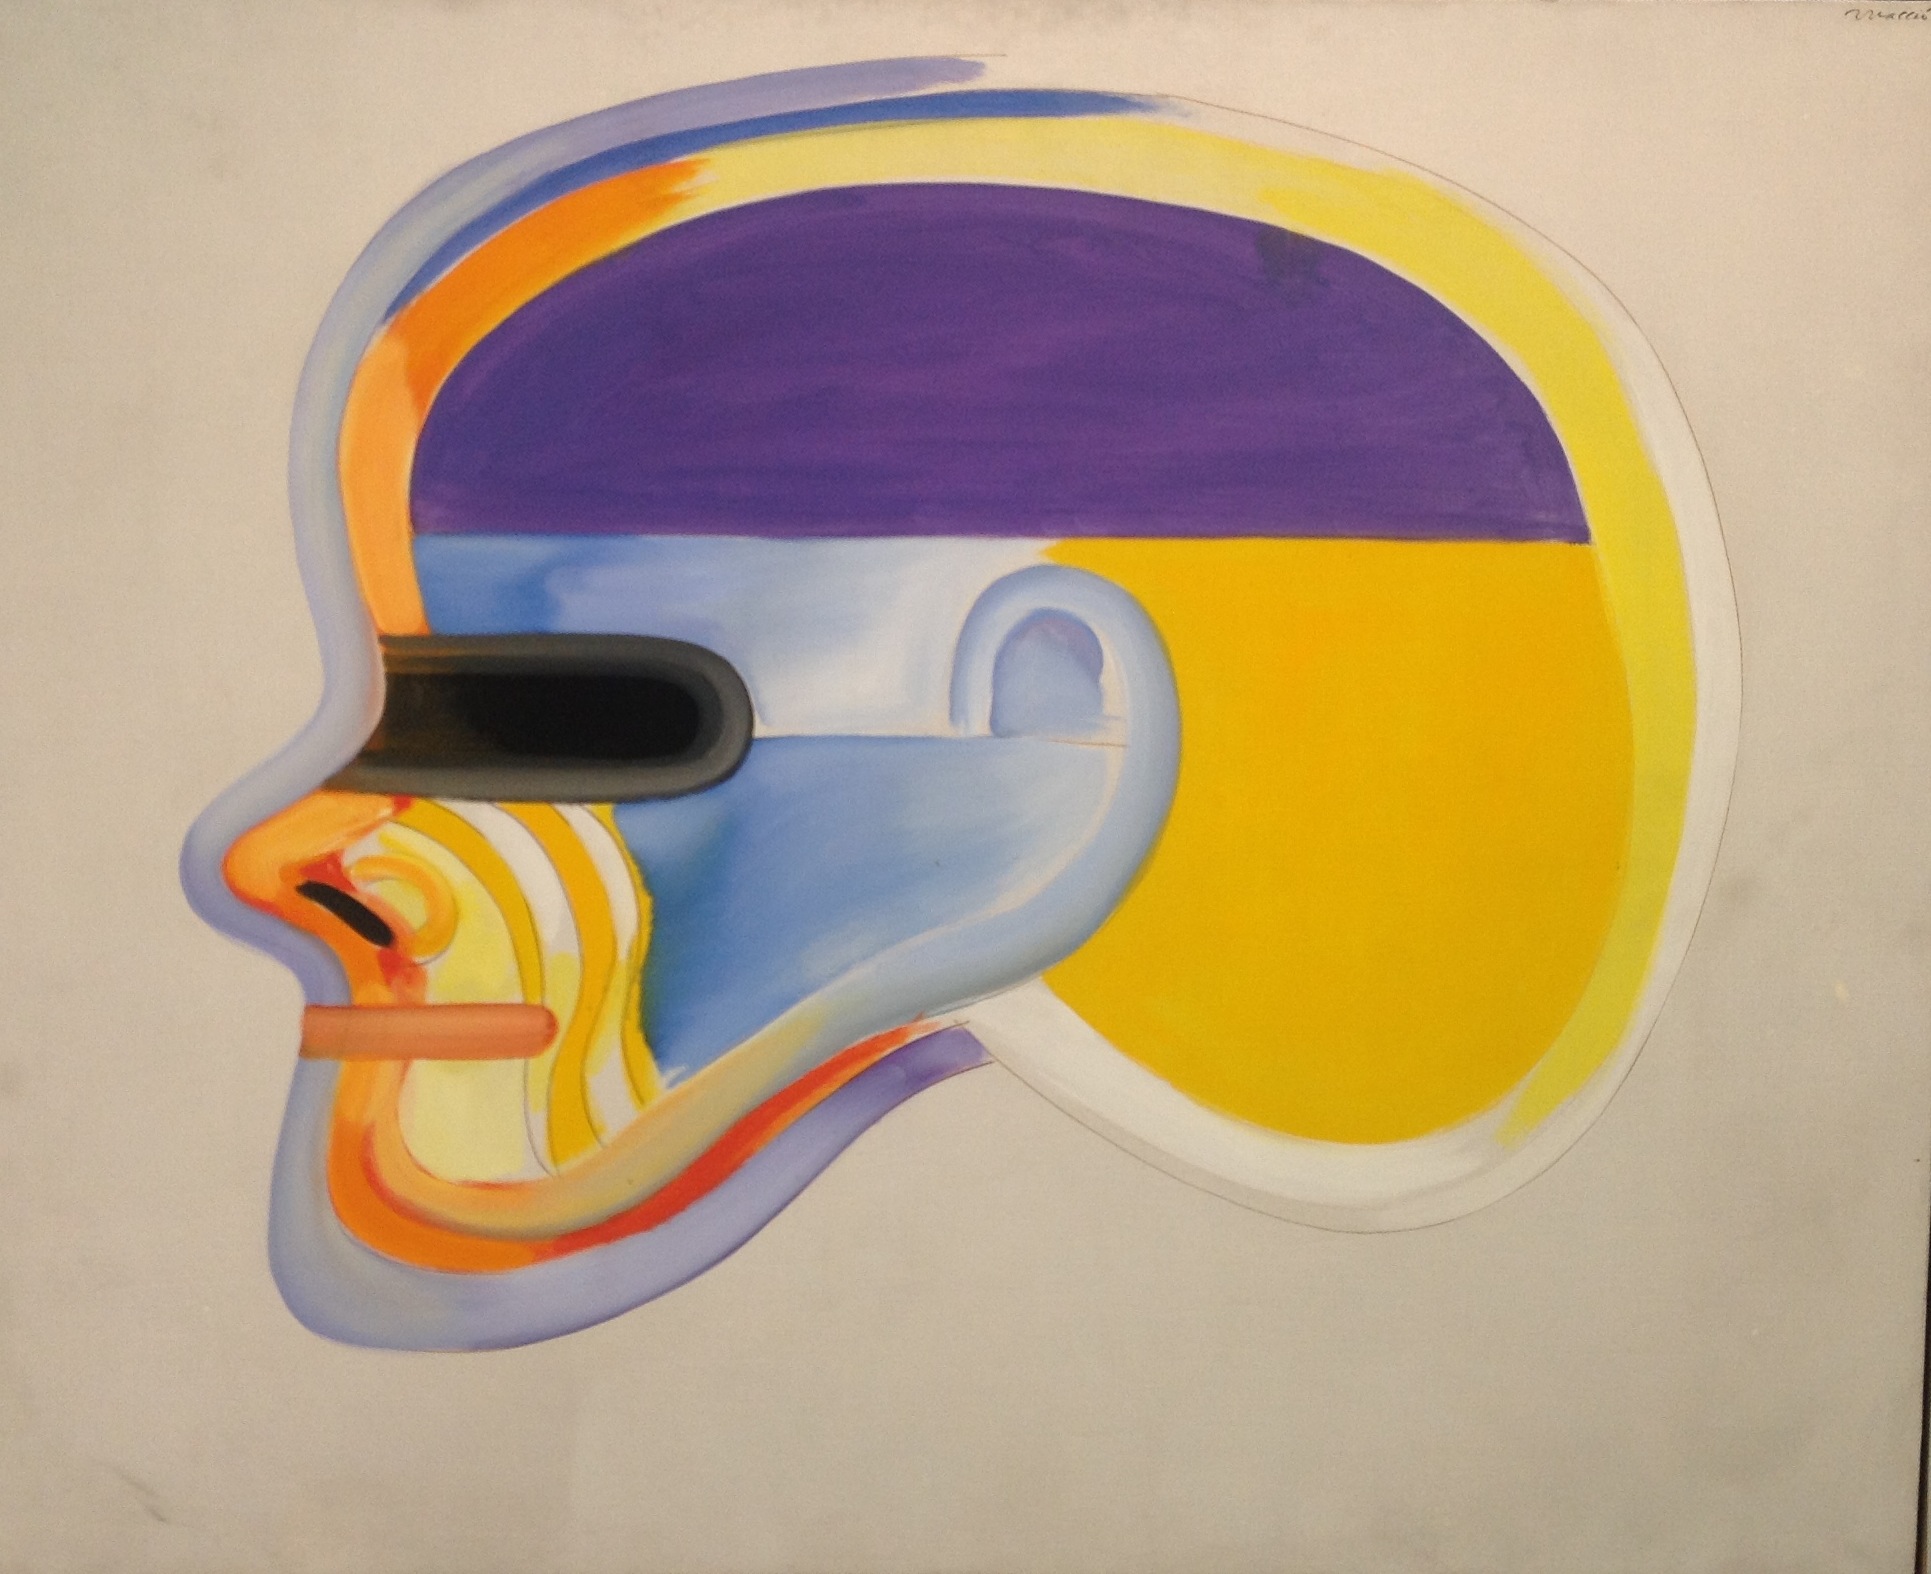 Rómulo Macció, "A ras", 1965, Acrílico sobre tela, 135 x 166 cm. Colección fundación Alon para las artes.